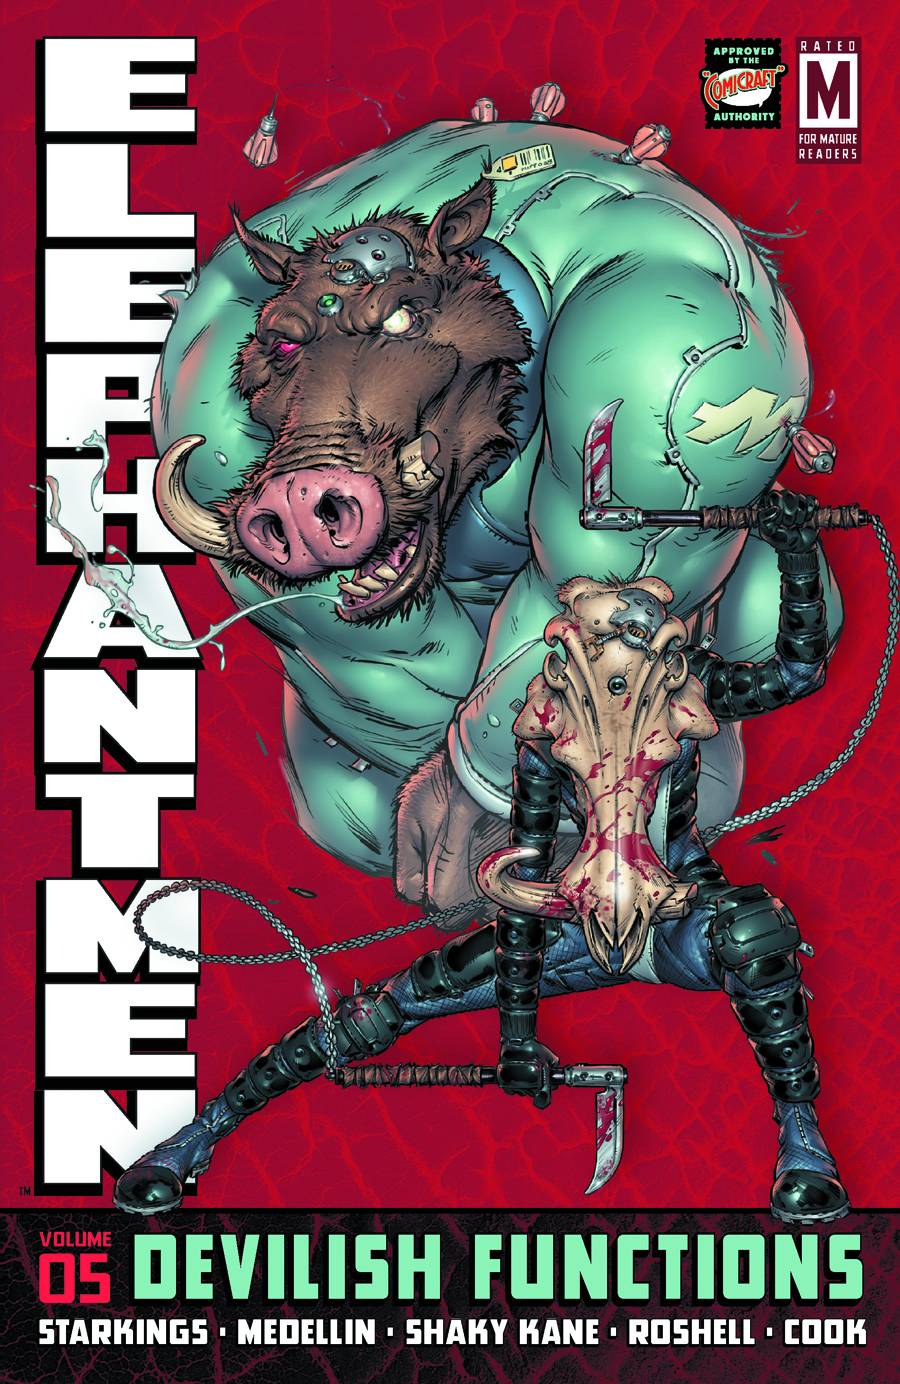 Elephantmen Graphic Novel Volume 5 Devilish Functions